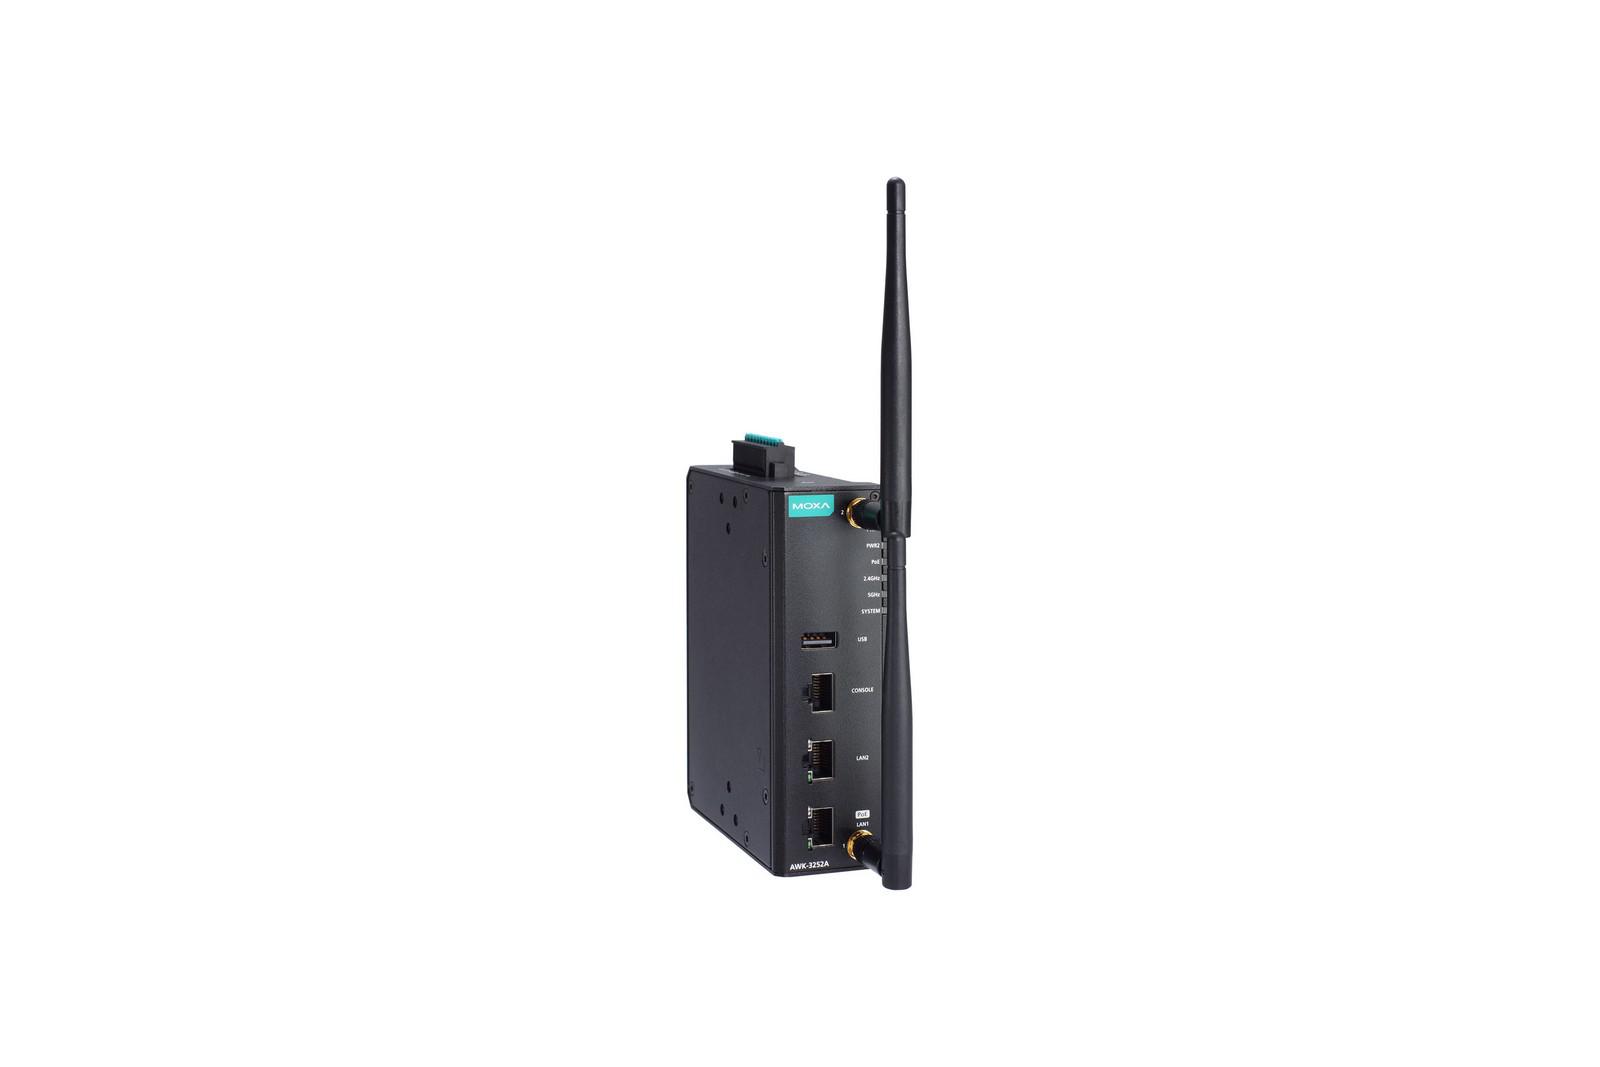 AWK-3252A Series Industrial IEEE 802.11a/b/g/n/ac wireless AP/bridge/client